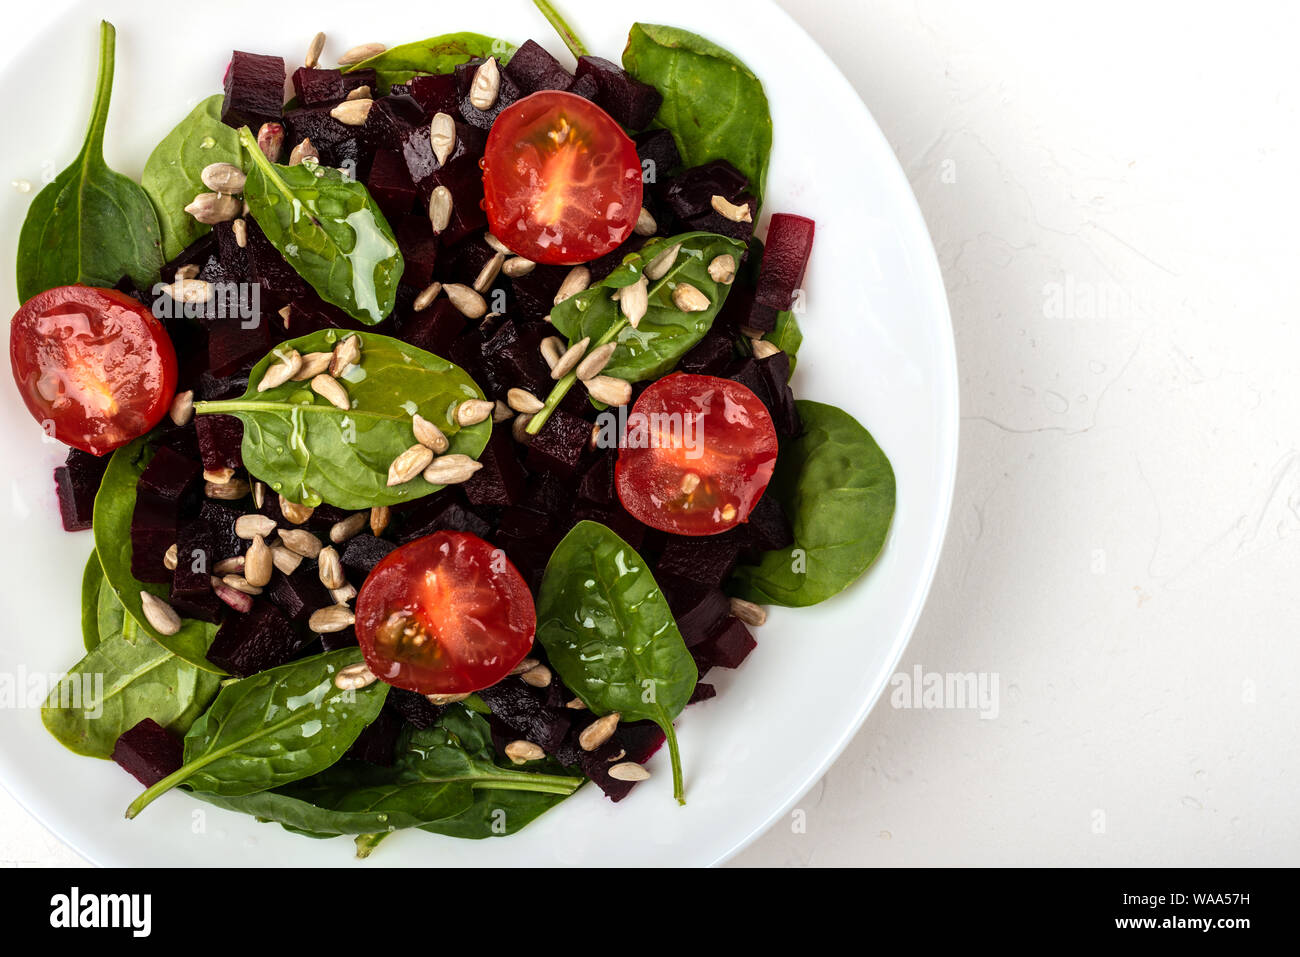 Una sana alimentazione vegetariana. Insalata con barbabietola, spinaci, pomodorini e semi. Foto Stock